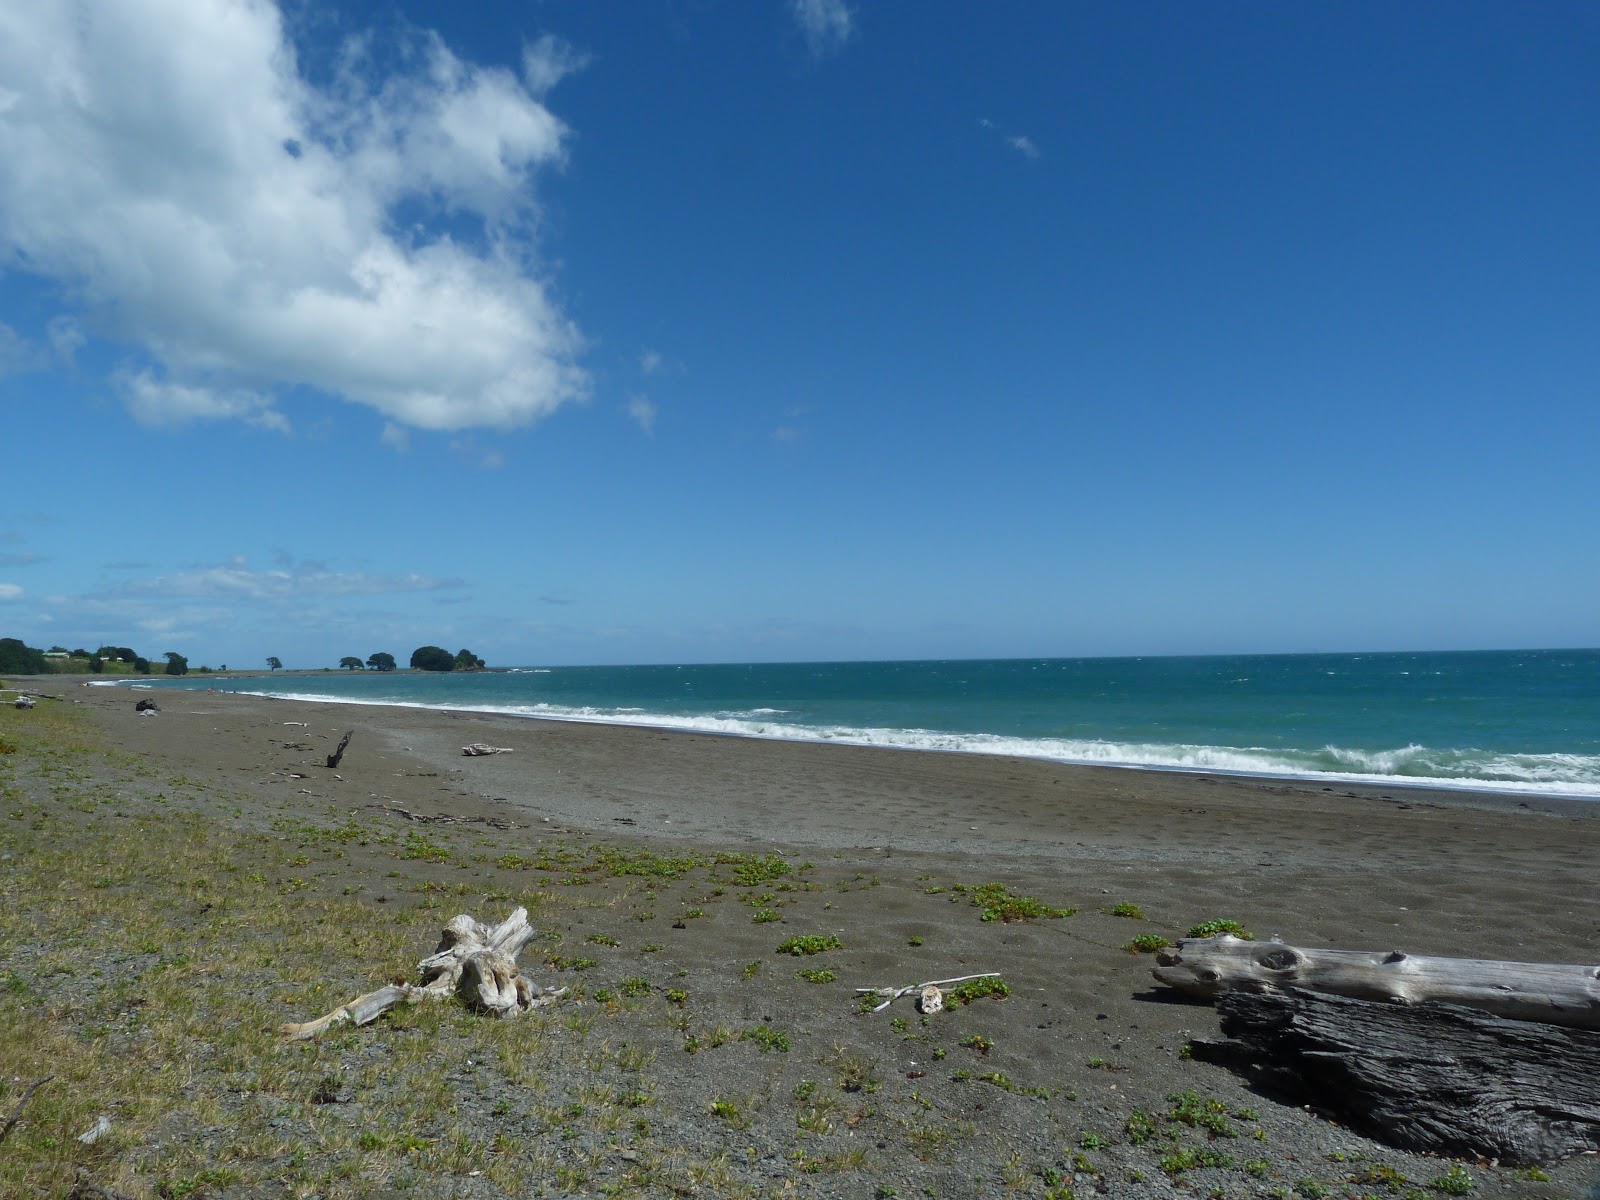 Te Kaka Beach'in fotoğrafı gri kum yüzey ile